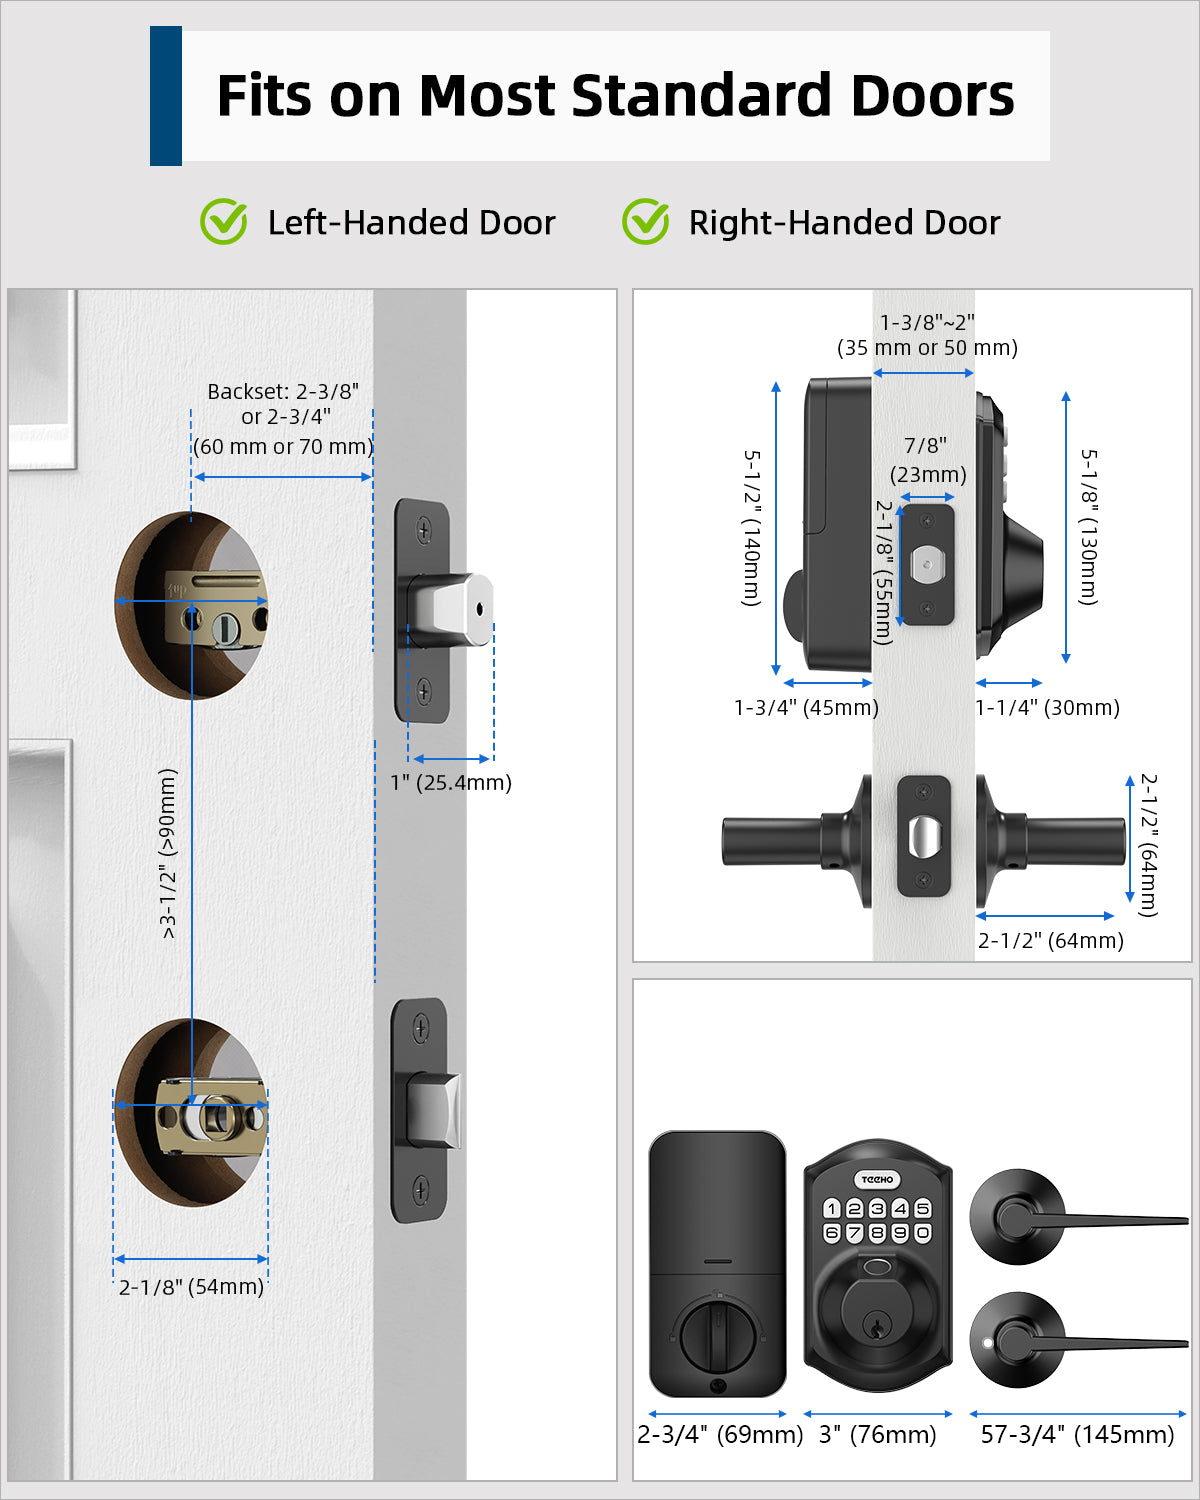 TEEHO TE002L Fingerprint Door Lock with 2 Lever Handle